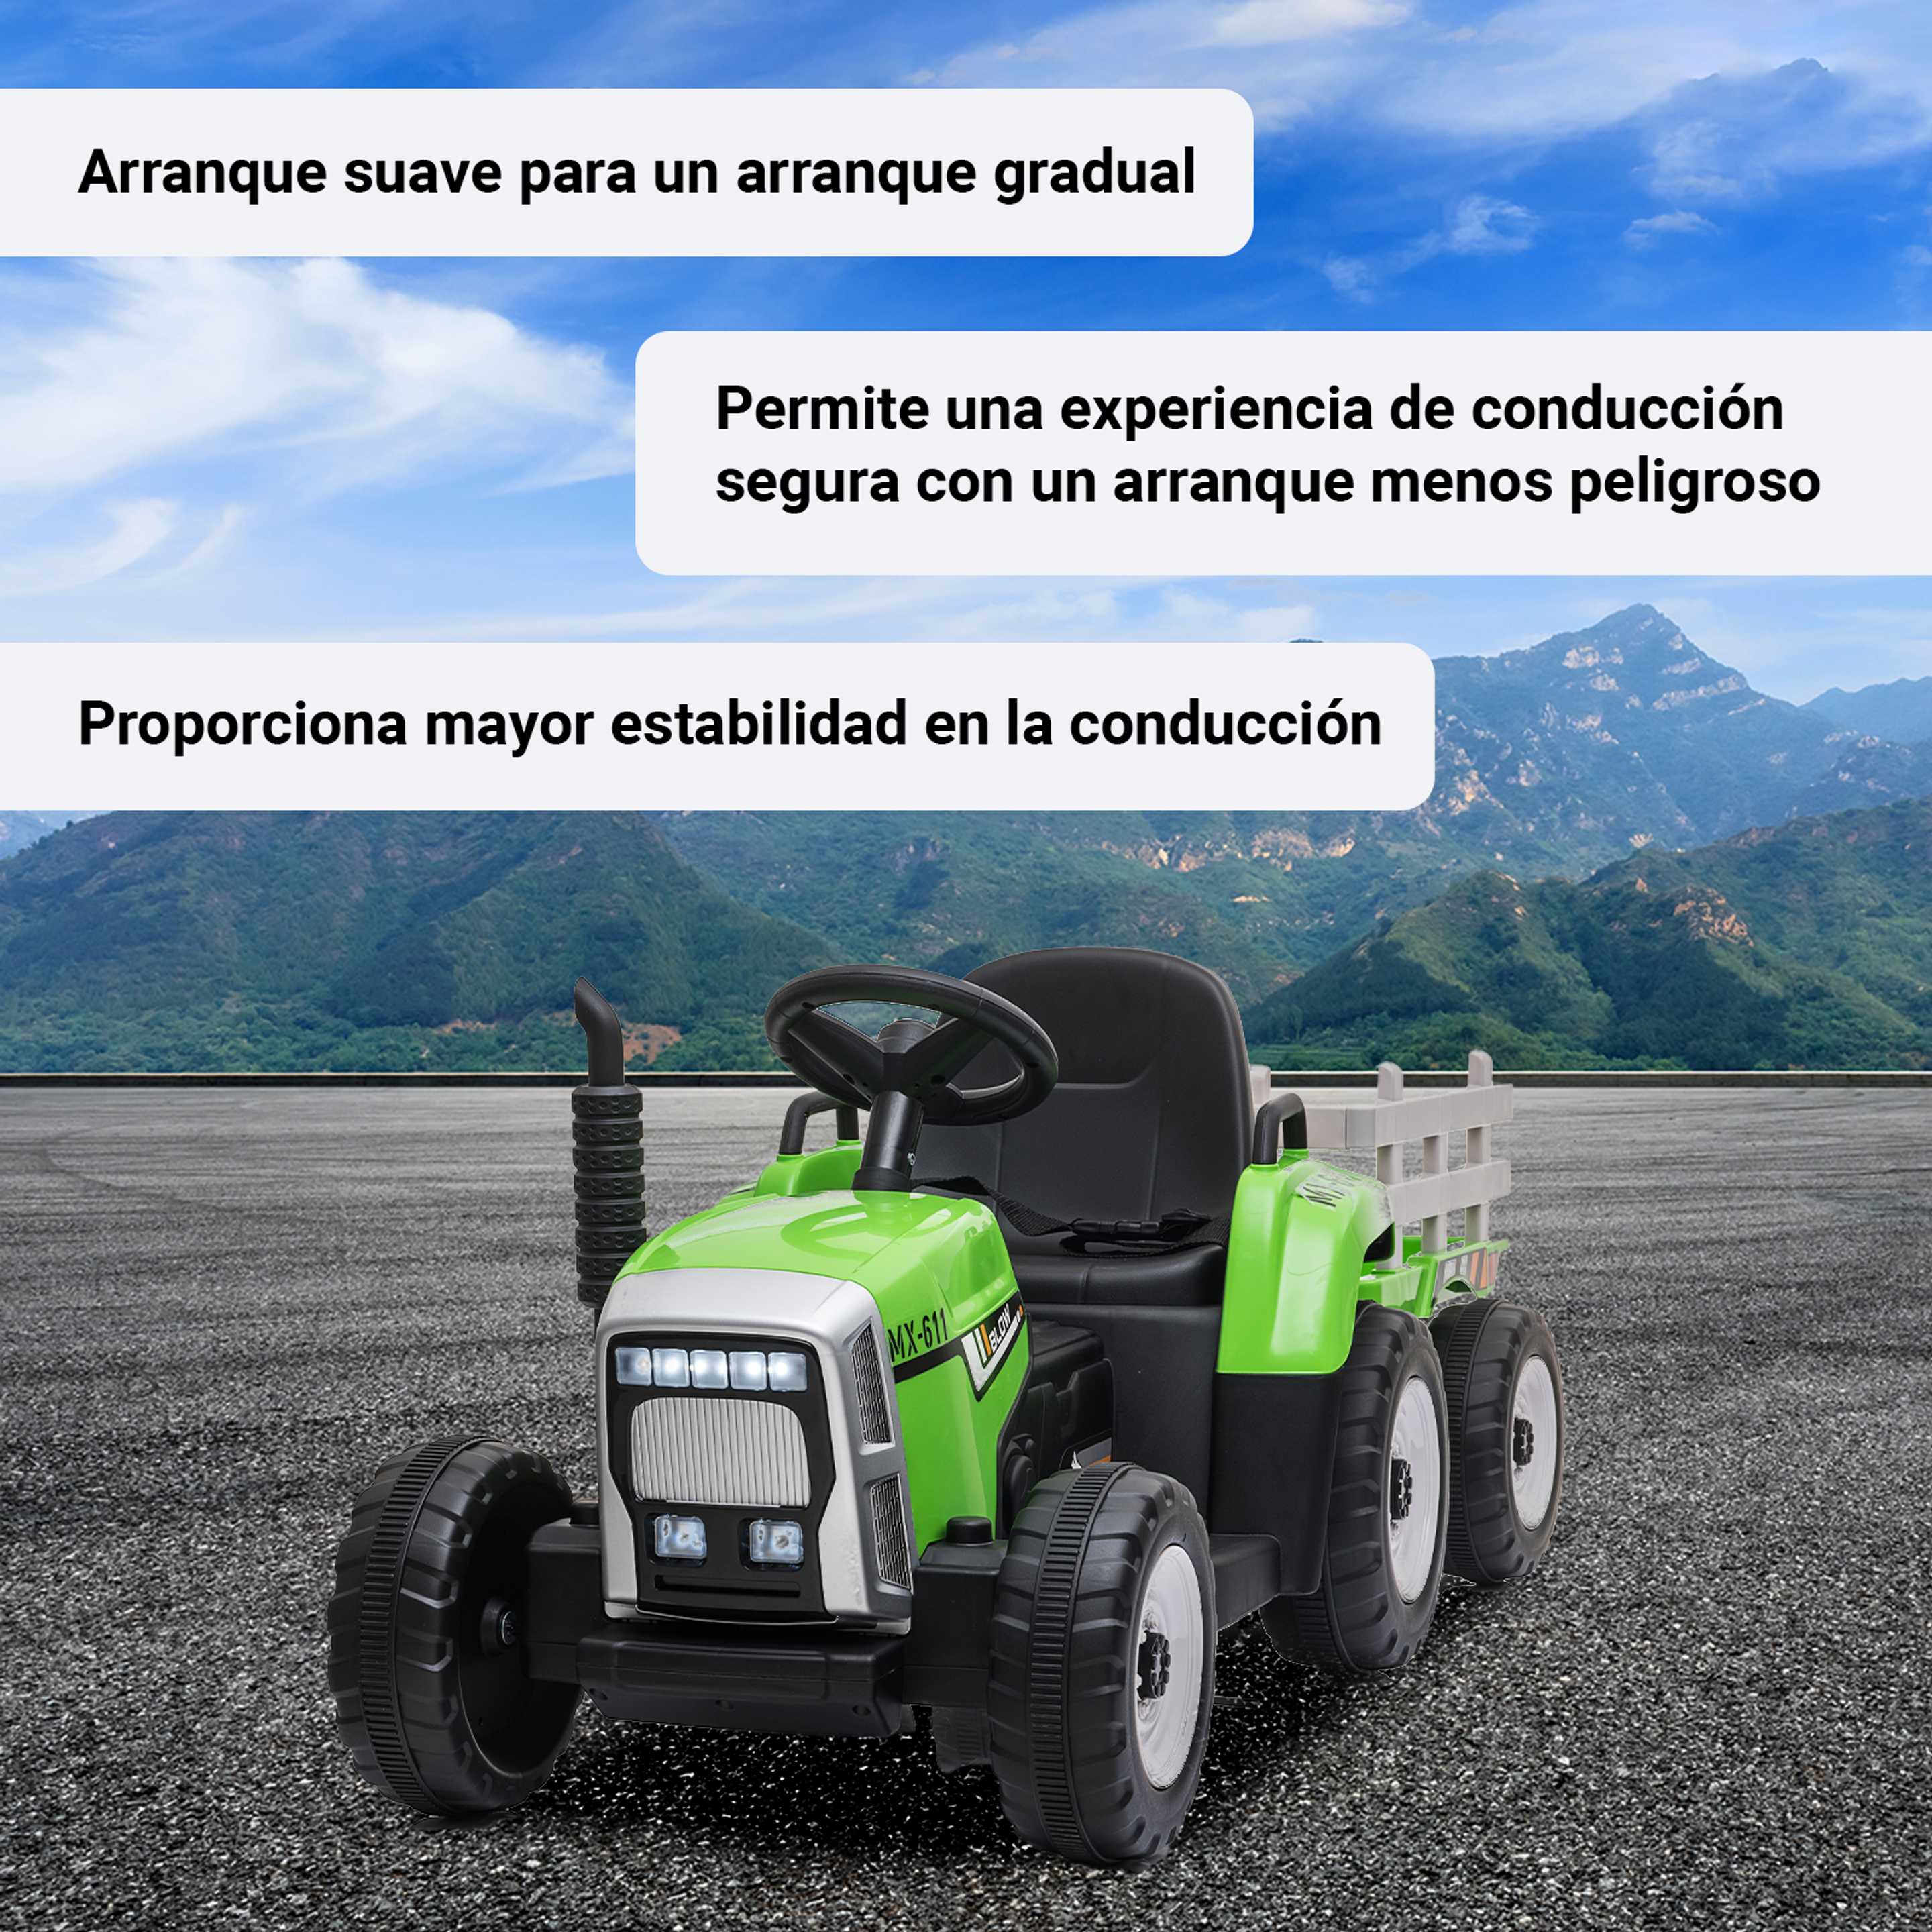 Tractor Eléctrico Mahindra Maxi para Niños 12v 2 potentes motores